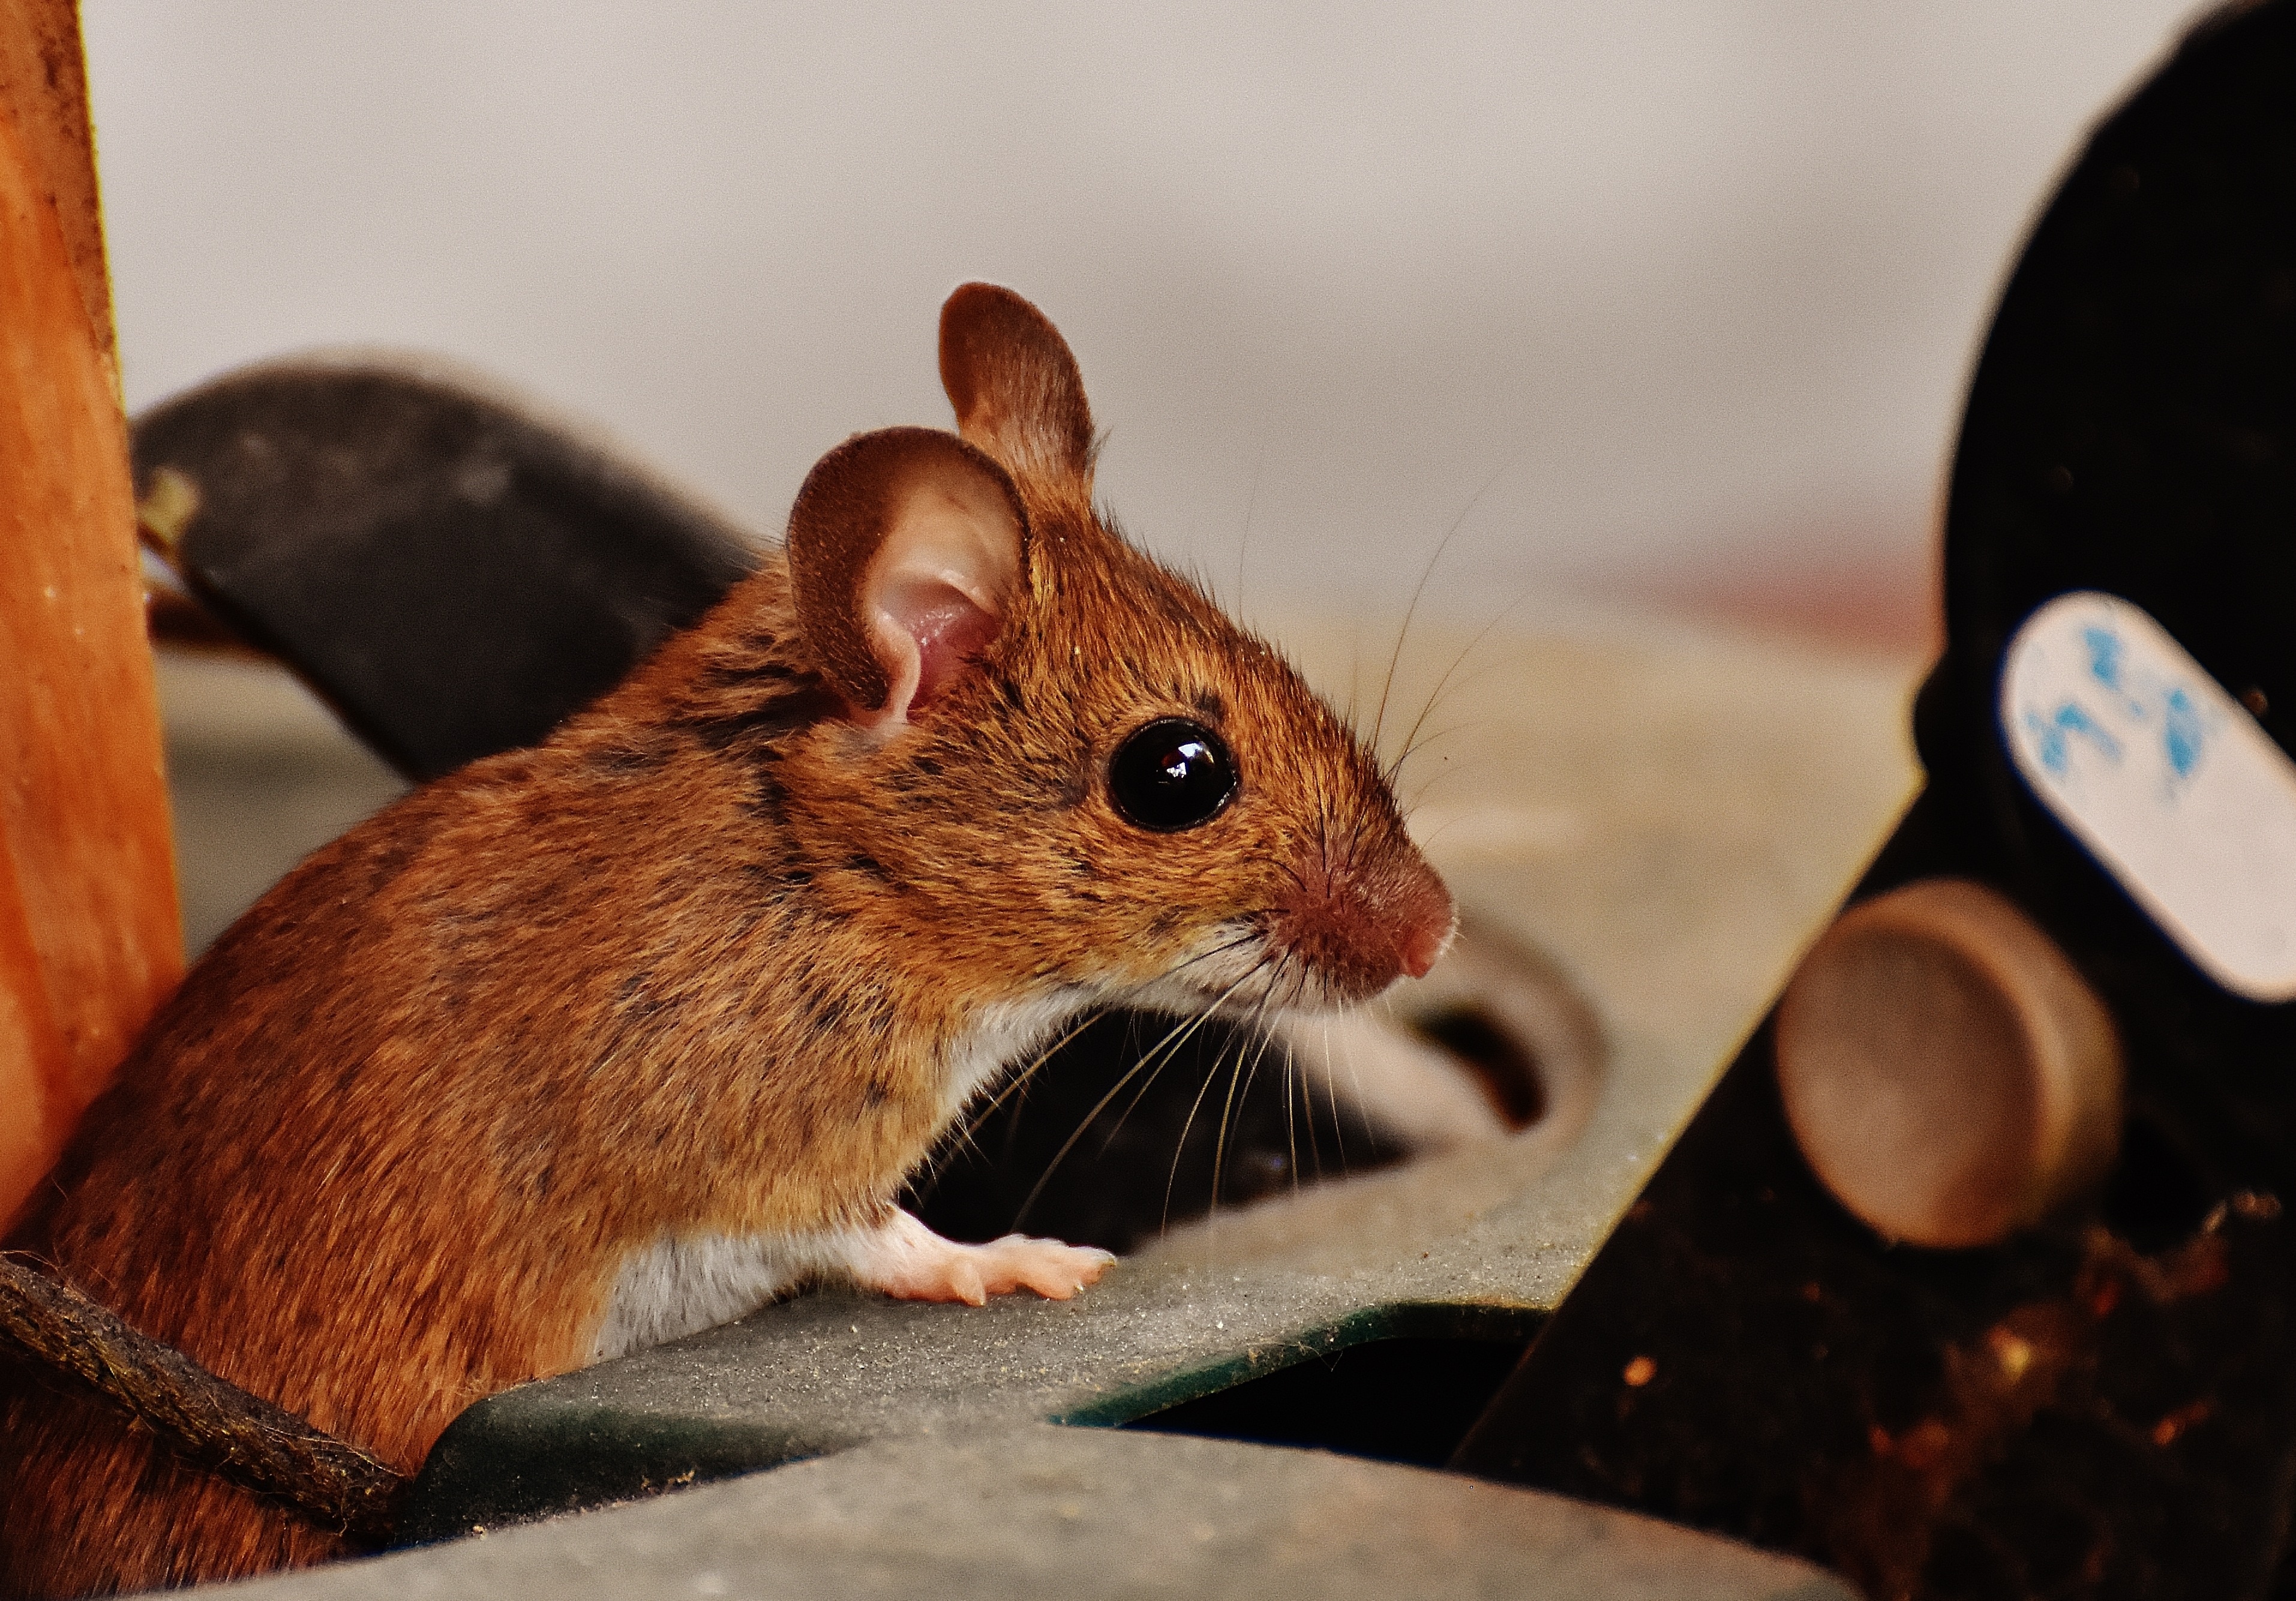 Видеть во живых мышей. Восточноазиатская мышь Apodemus peninsulae Thomas, 1907. Коричневая мышь. Рыжая мышь. Мышка домашняя.